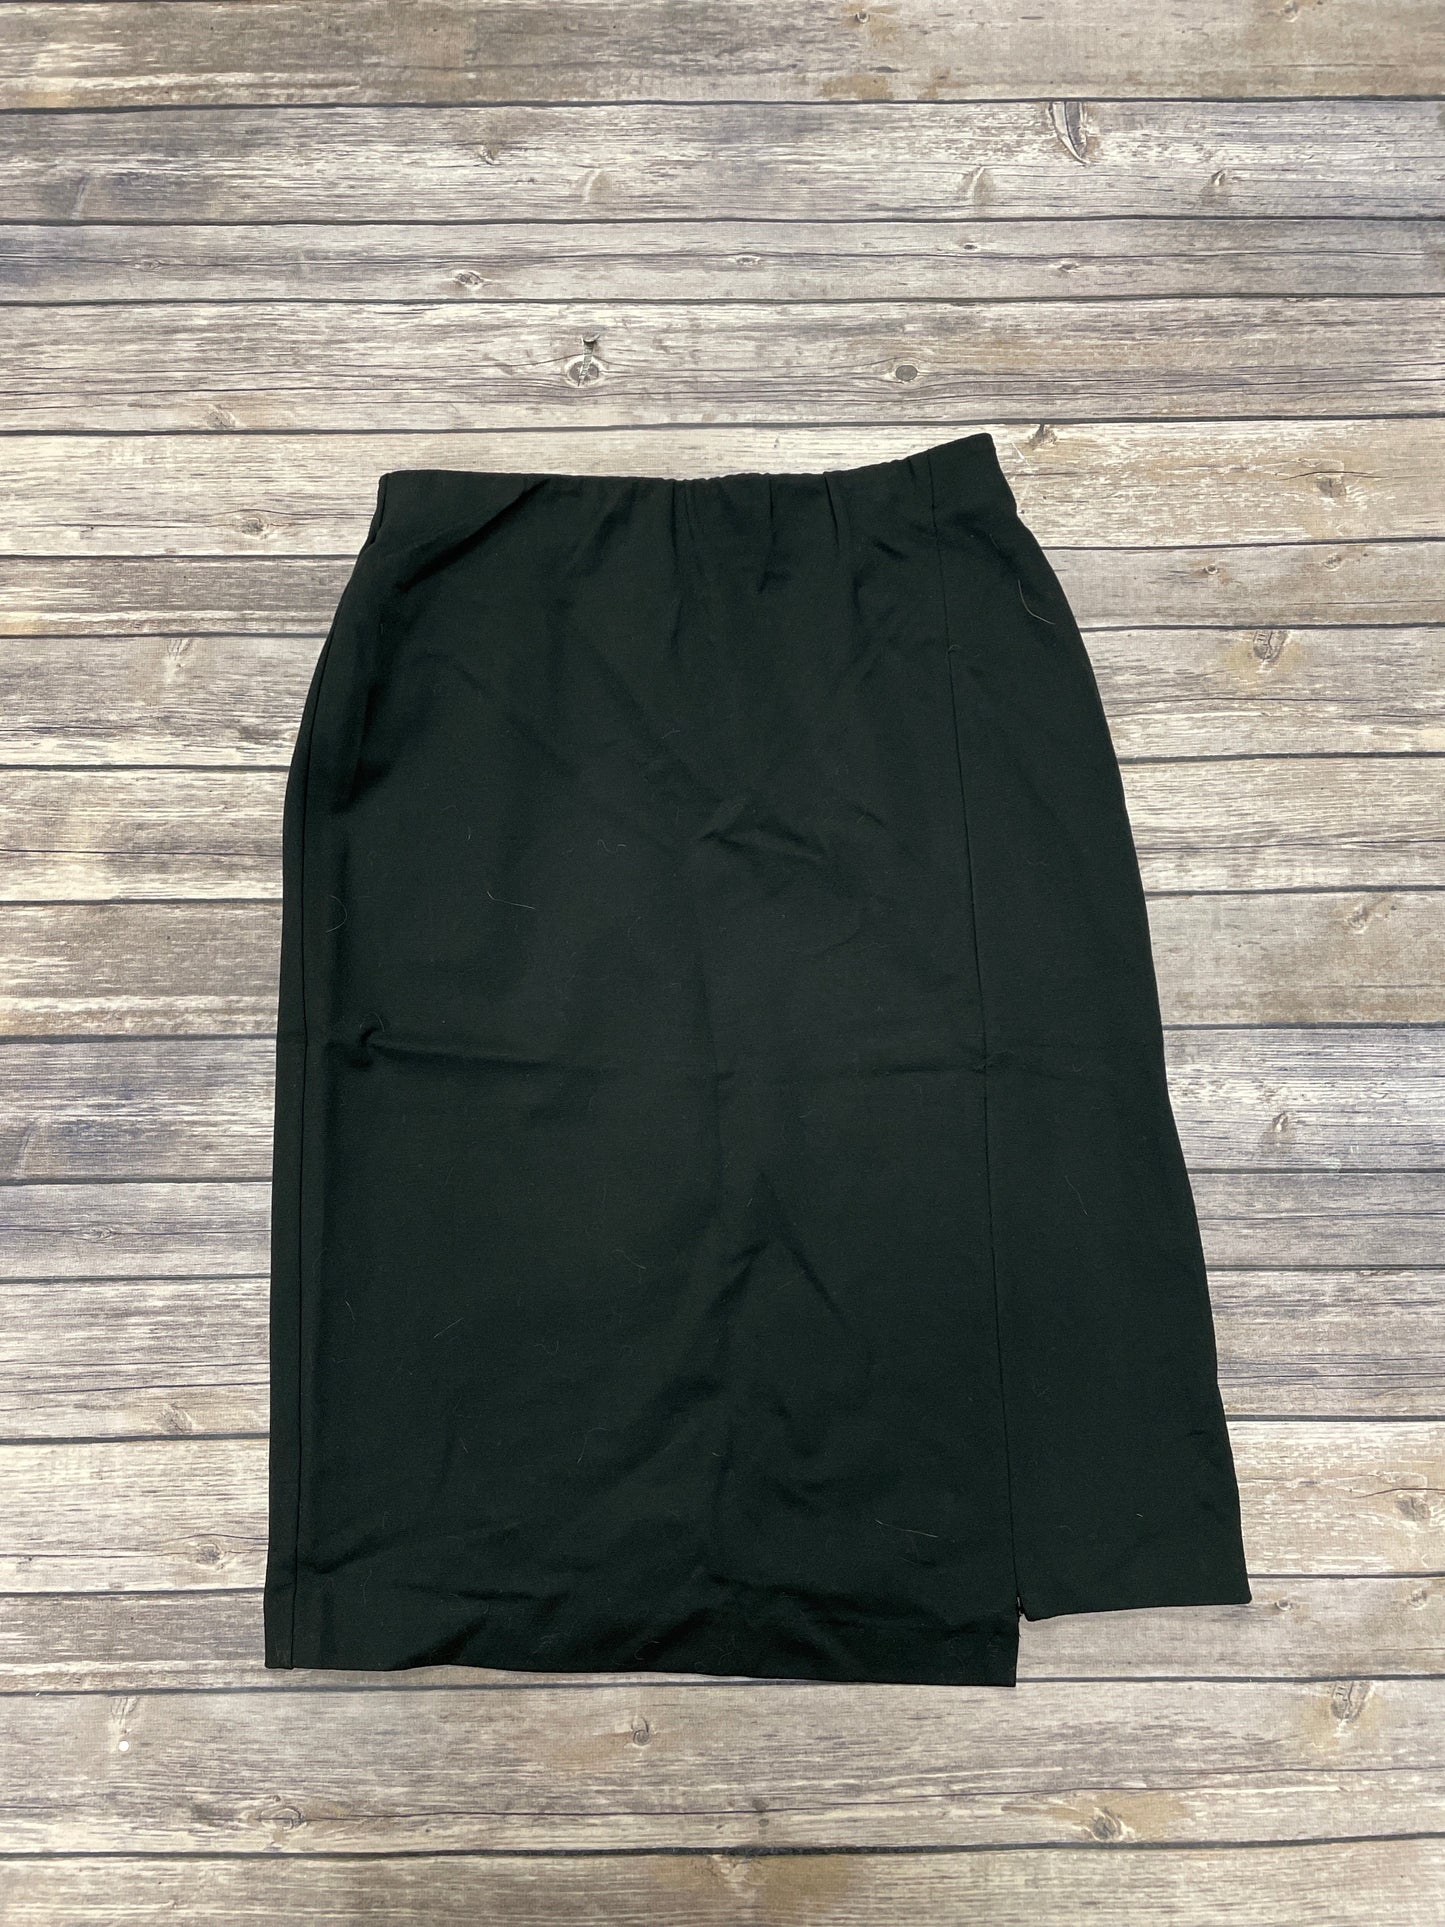 Skirt Midi By J Jill  Size: Xs